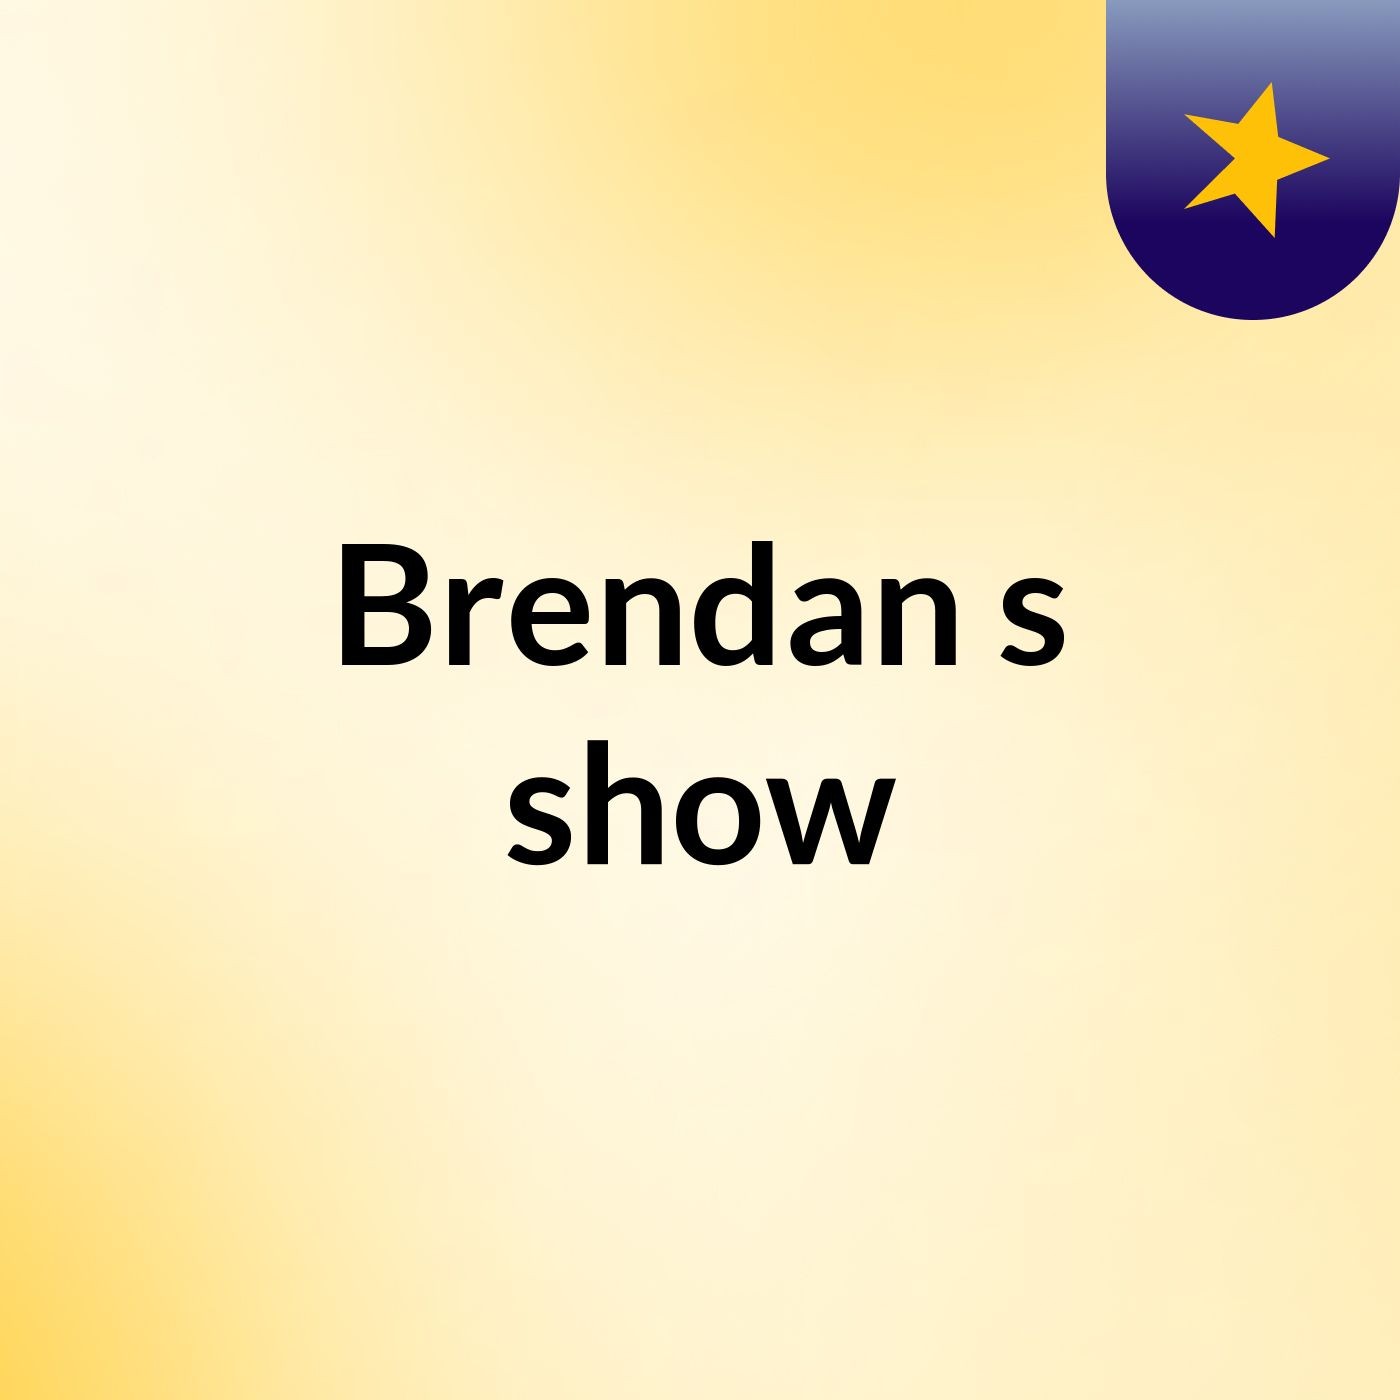 Brendan's show